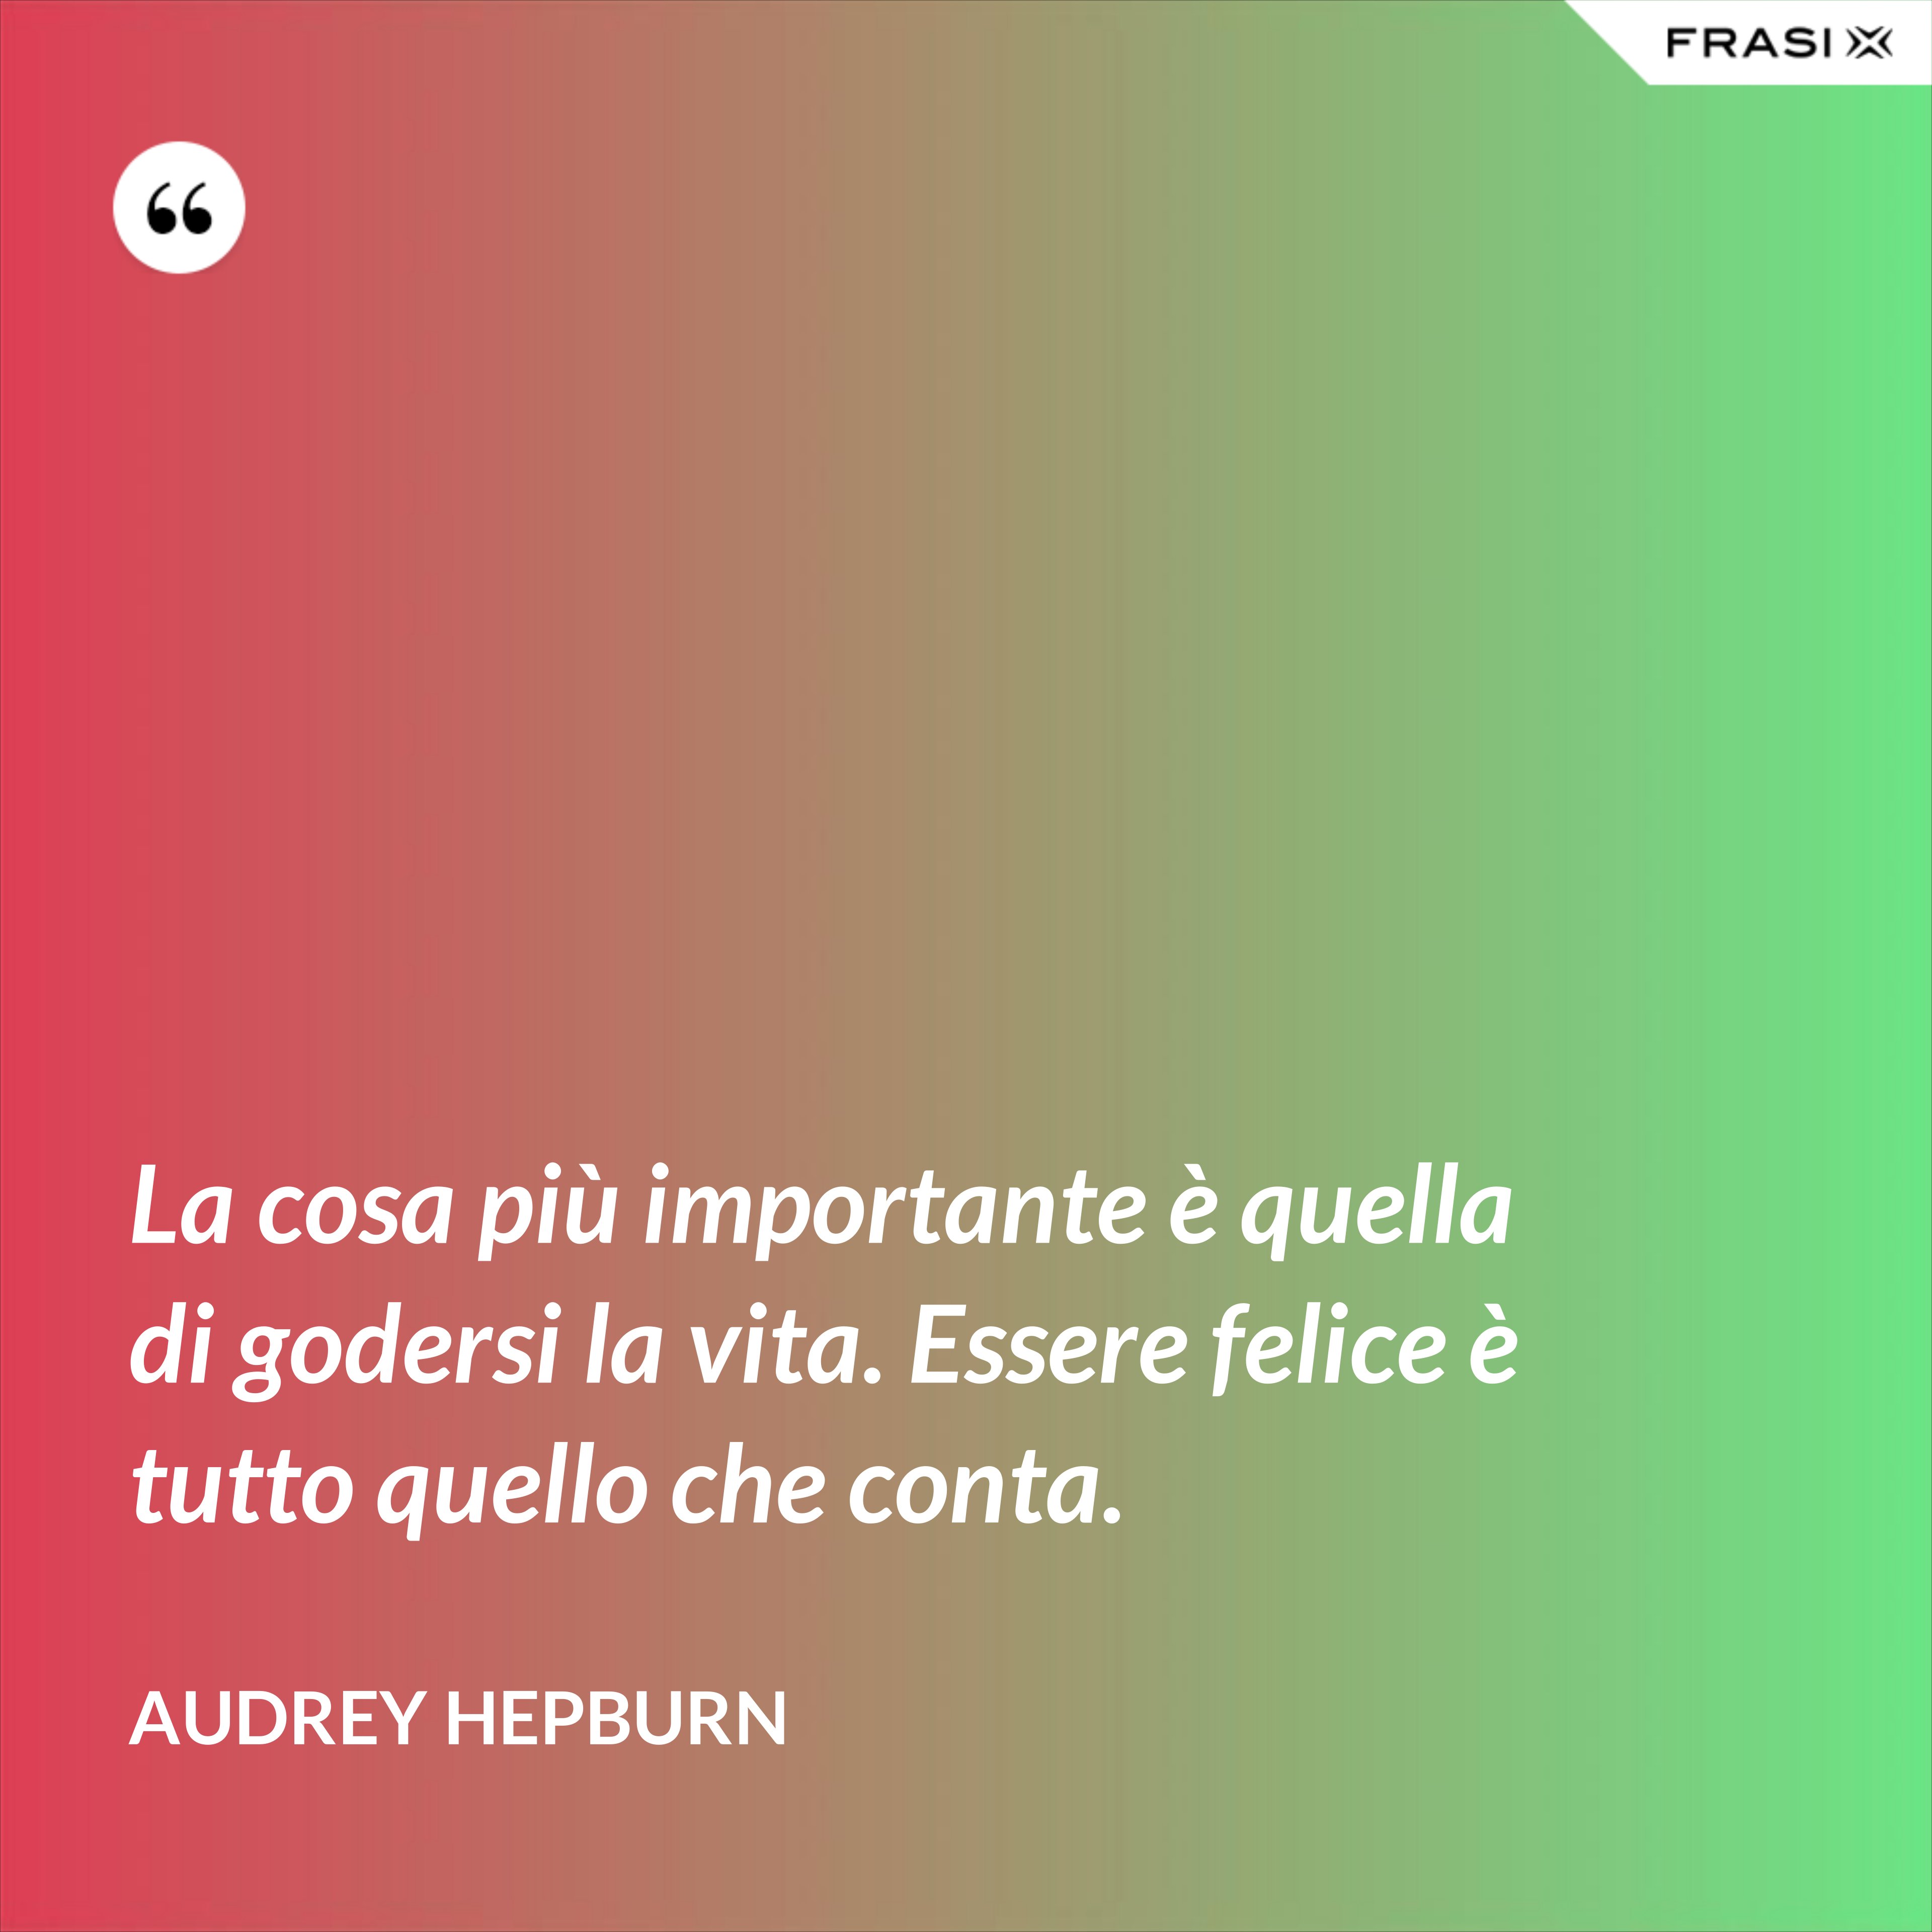 La cosa più importante è quella di godersi la vita. Essere felice è tutto quello che conta. - Audrey Hepburn